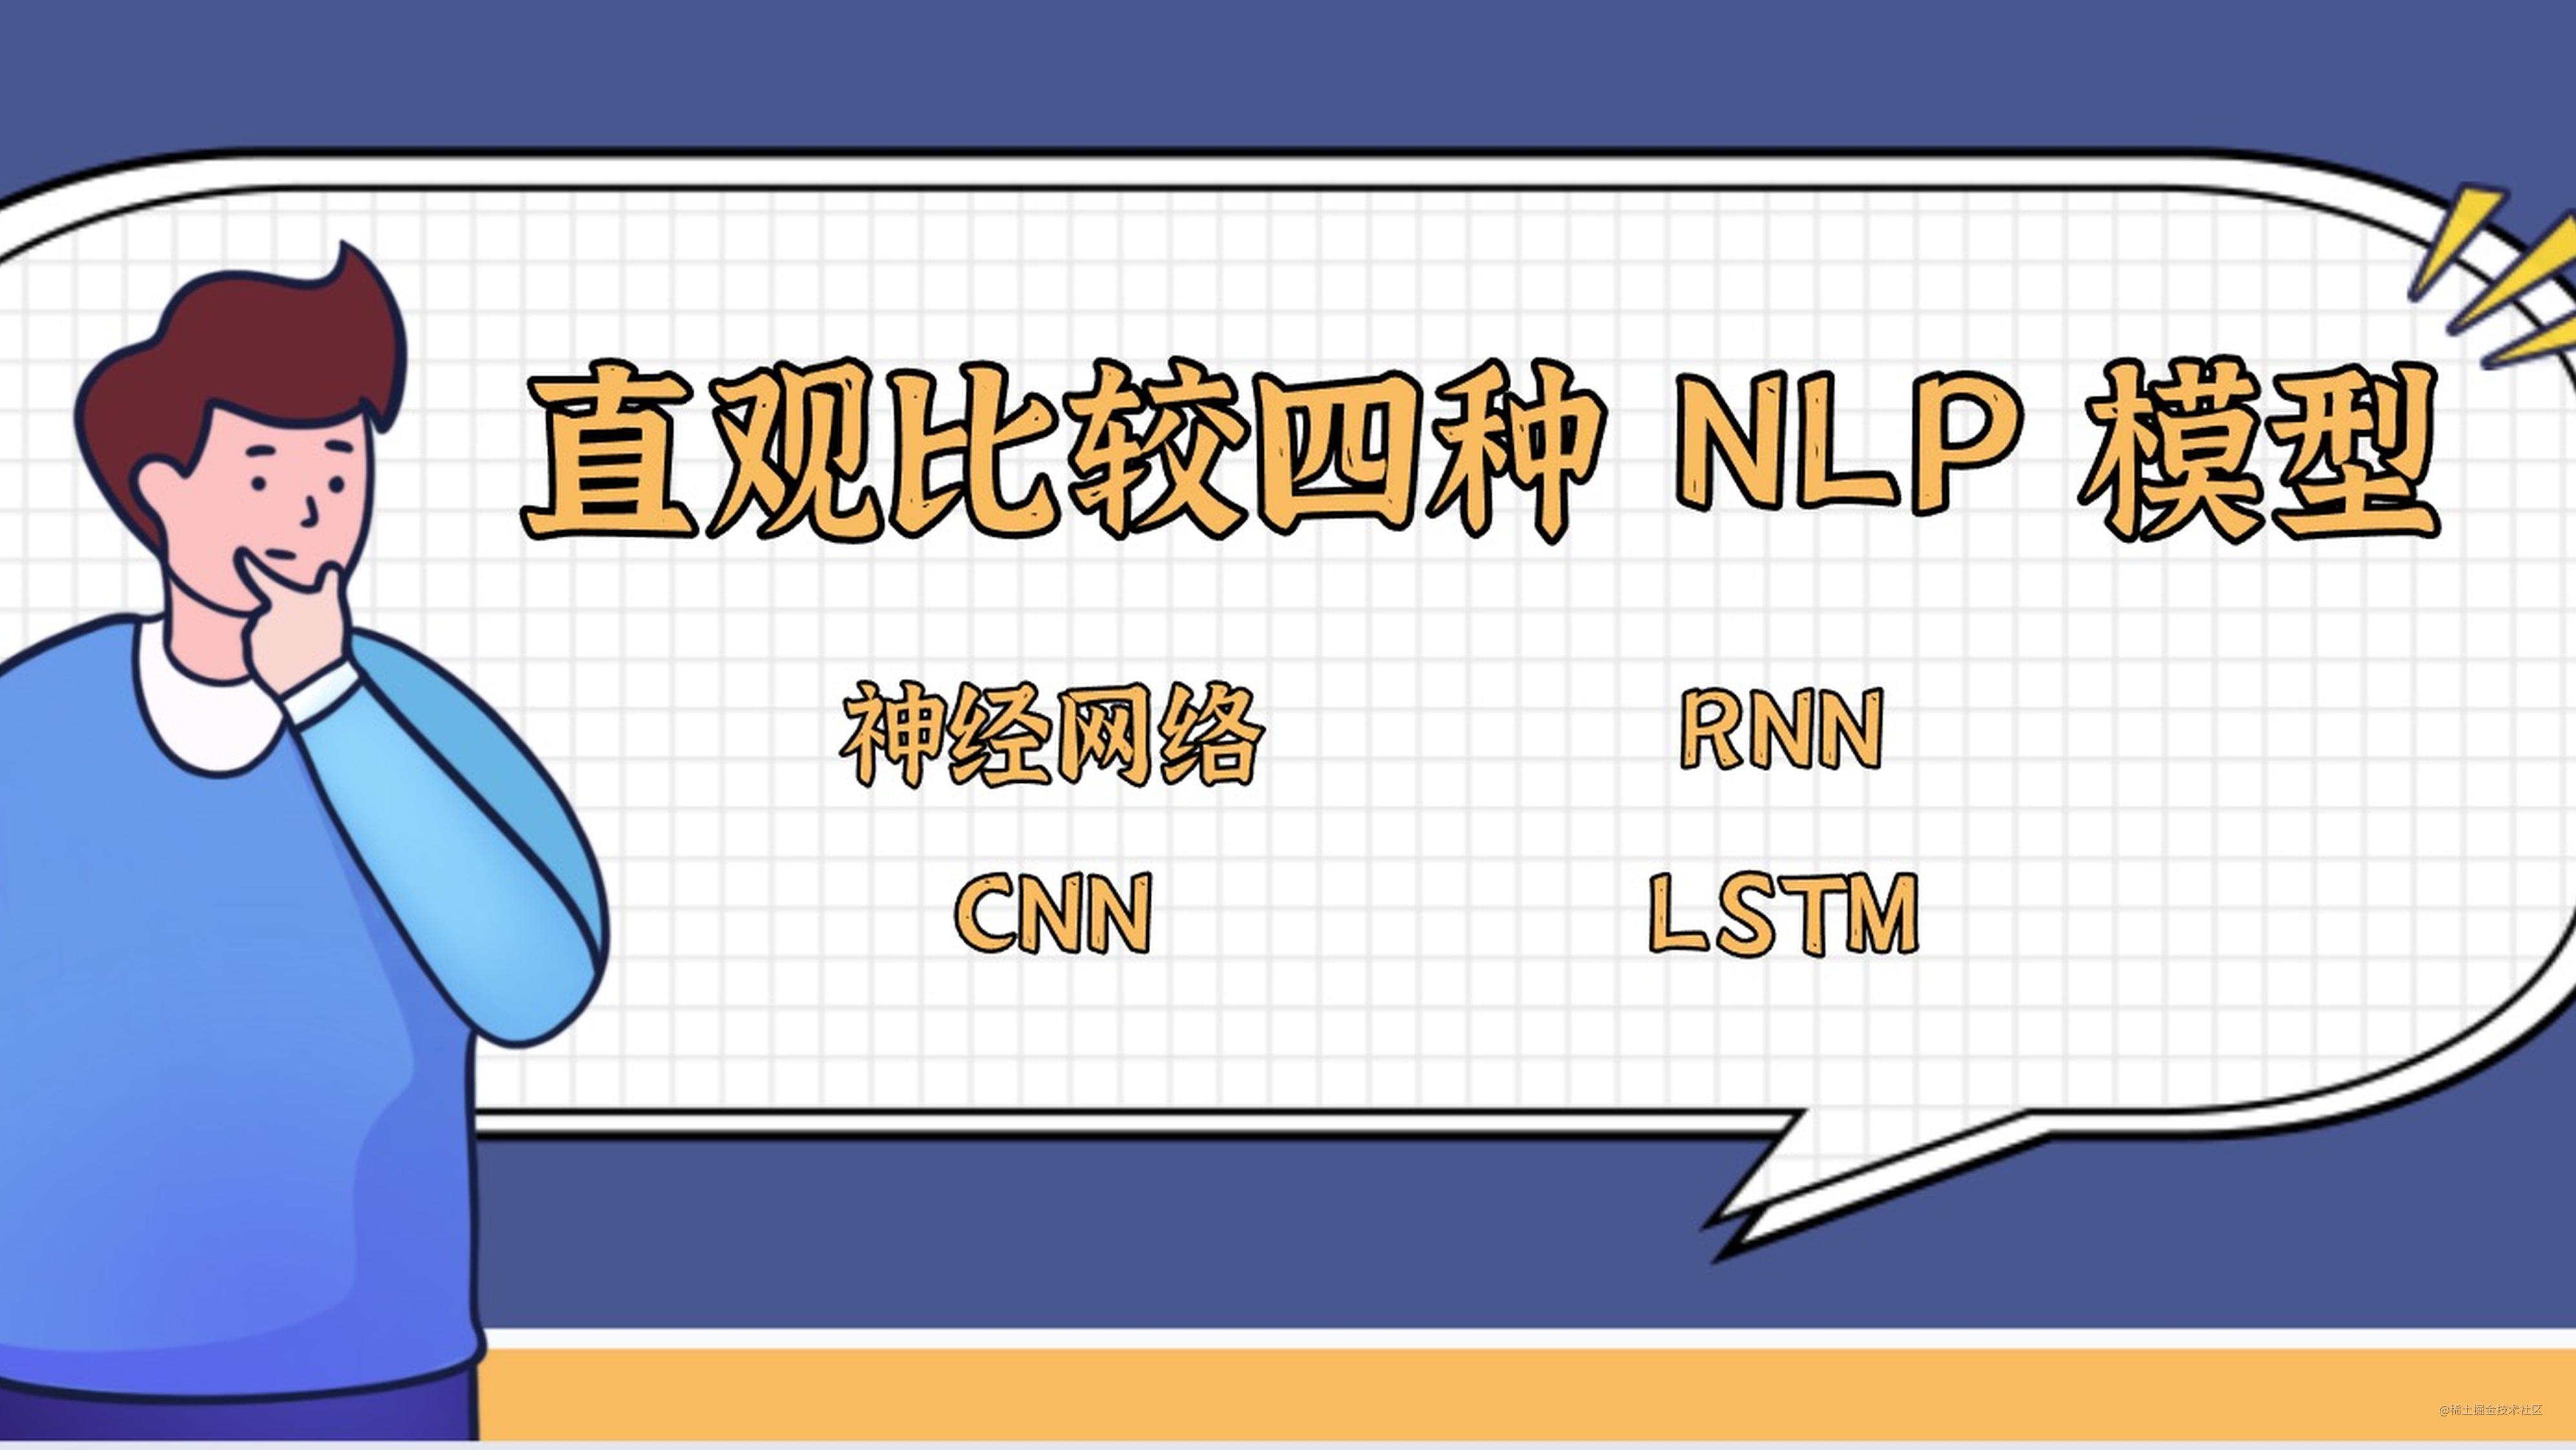 直观比较四种NLP模型 - 神经网络，RNN，CNN，LSTM